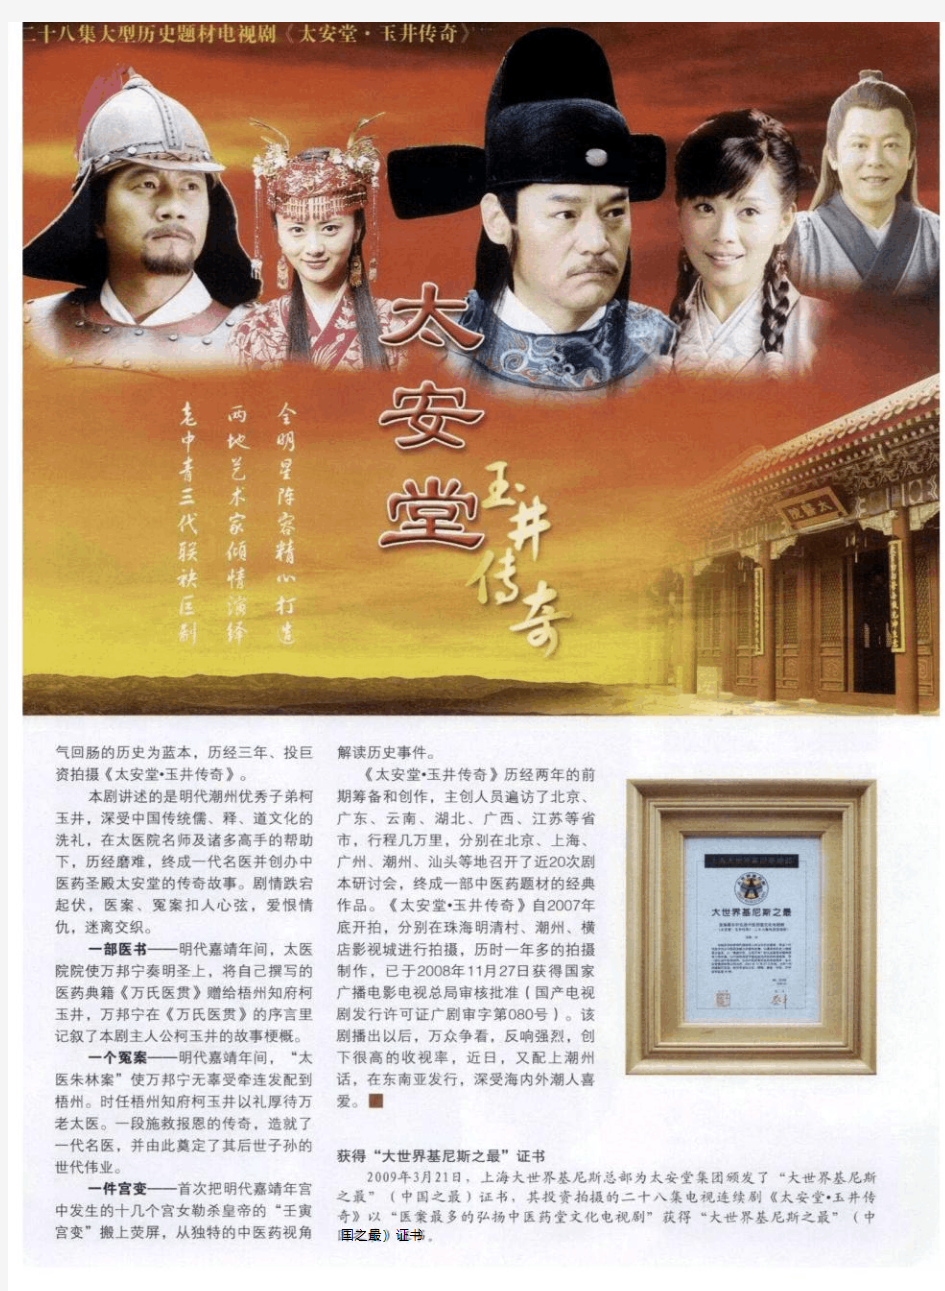 二十八集大型历史题材电视剧《太安堂·玉井传奇》2008年11月播出后  万众争看  传为佳话